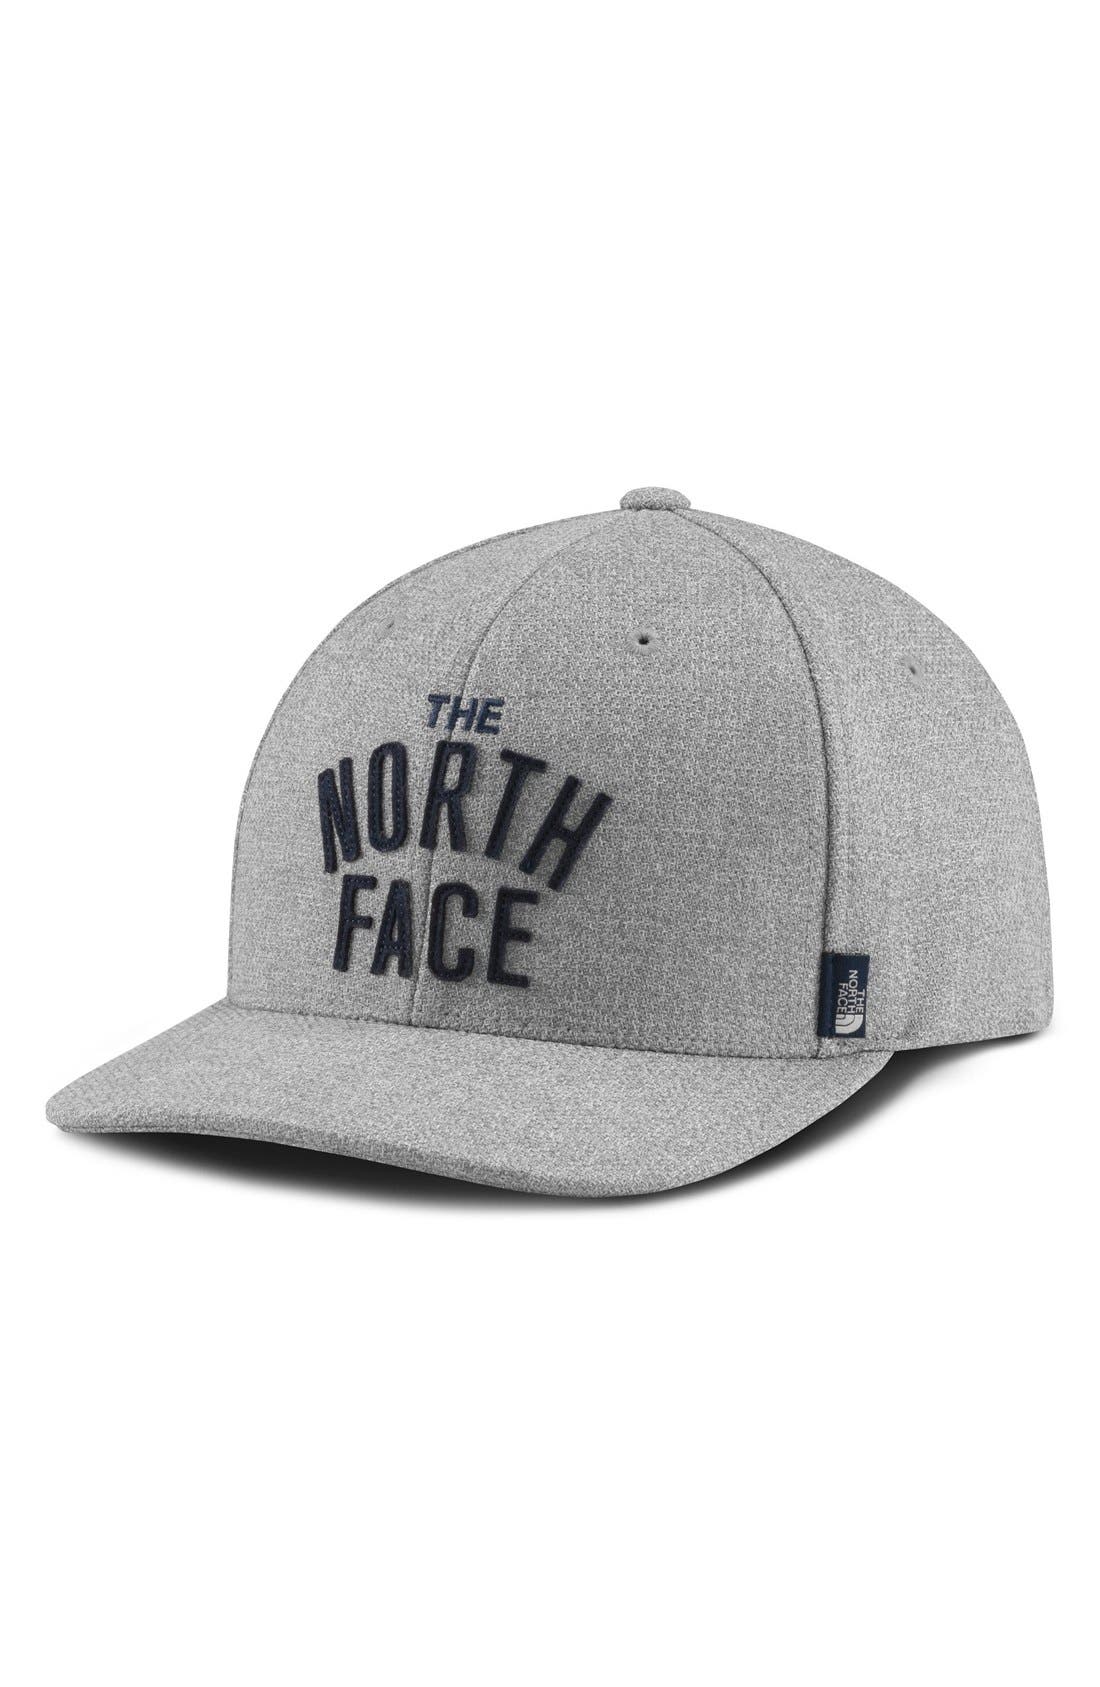 north face flexfit hat